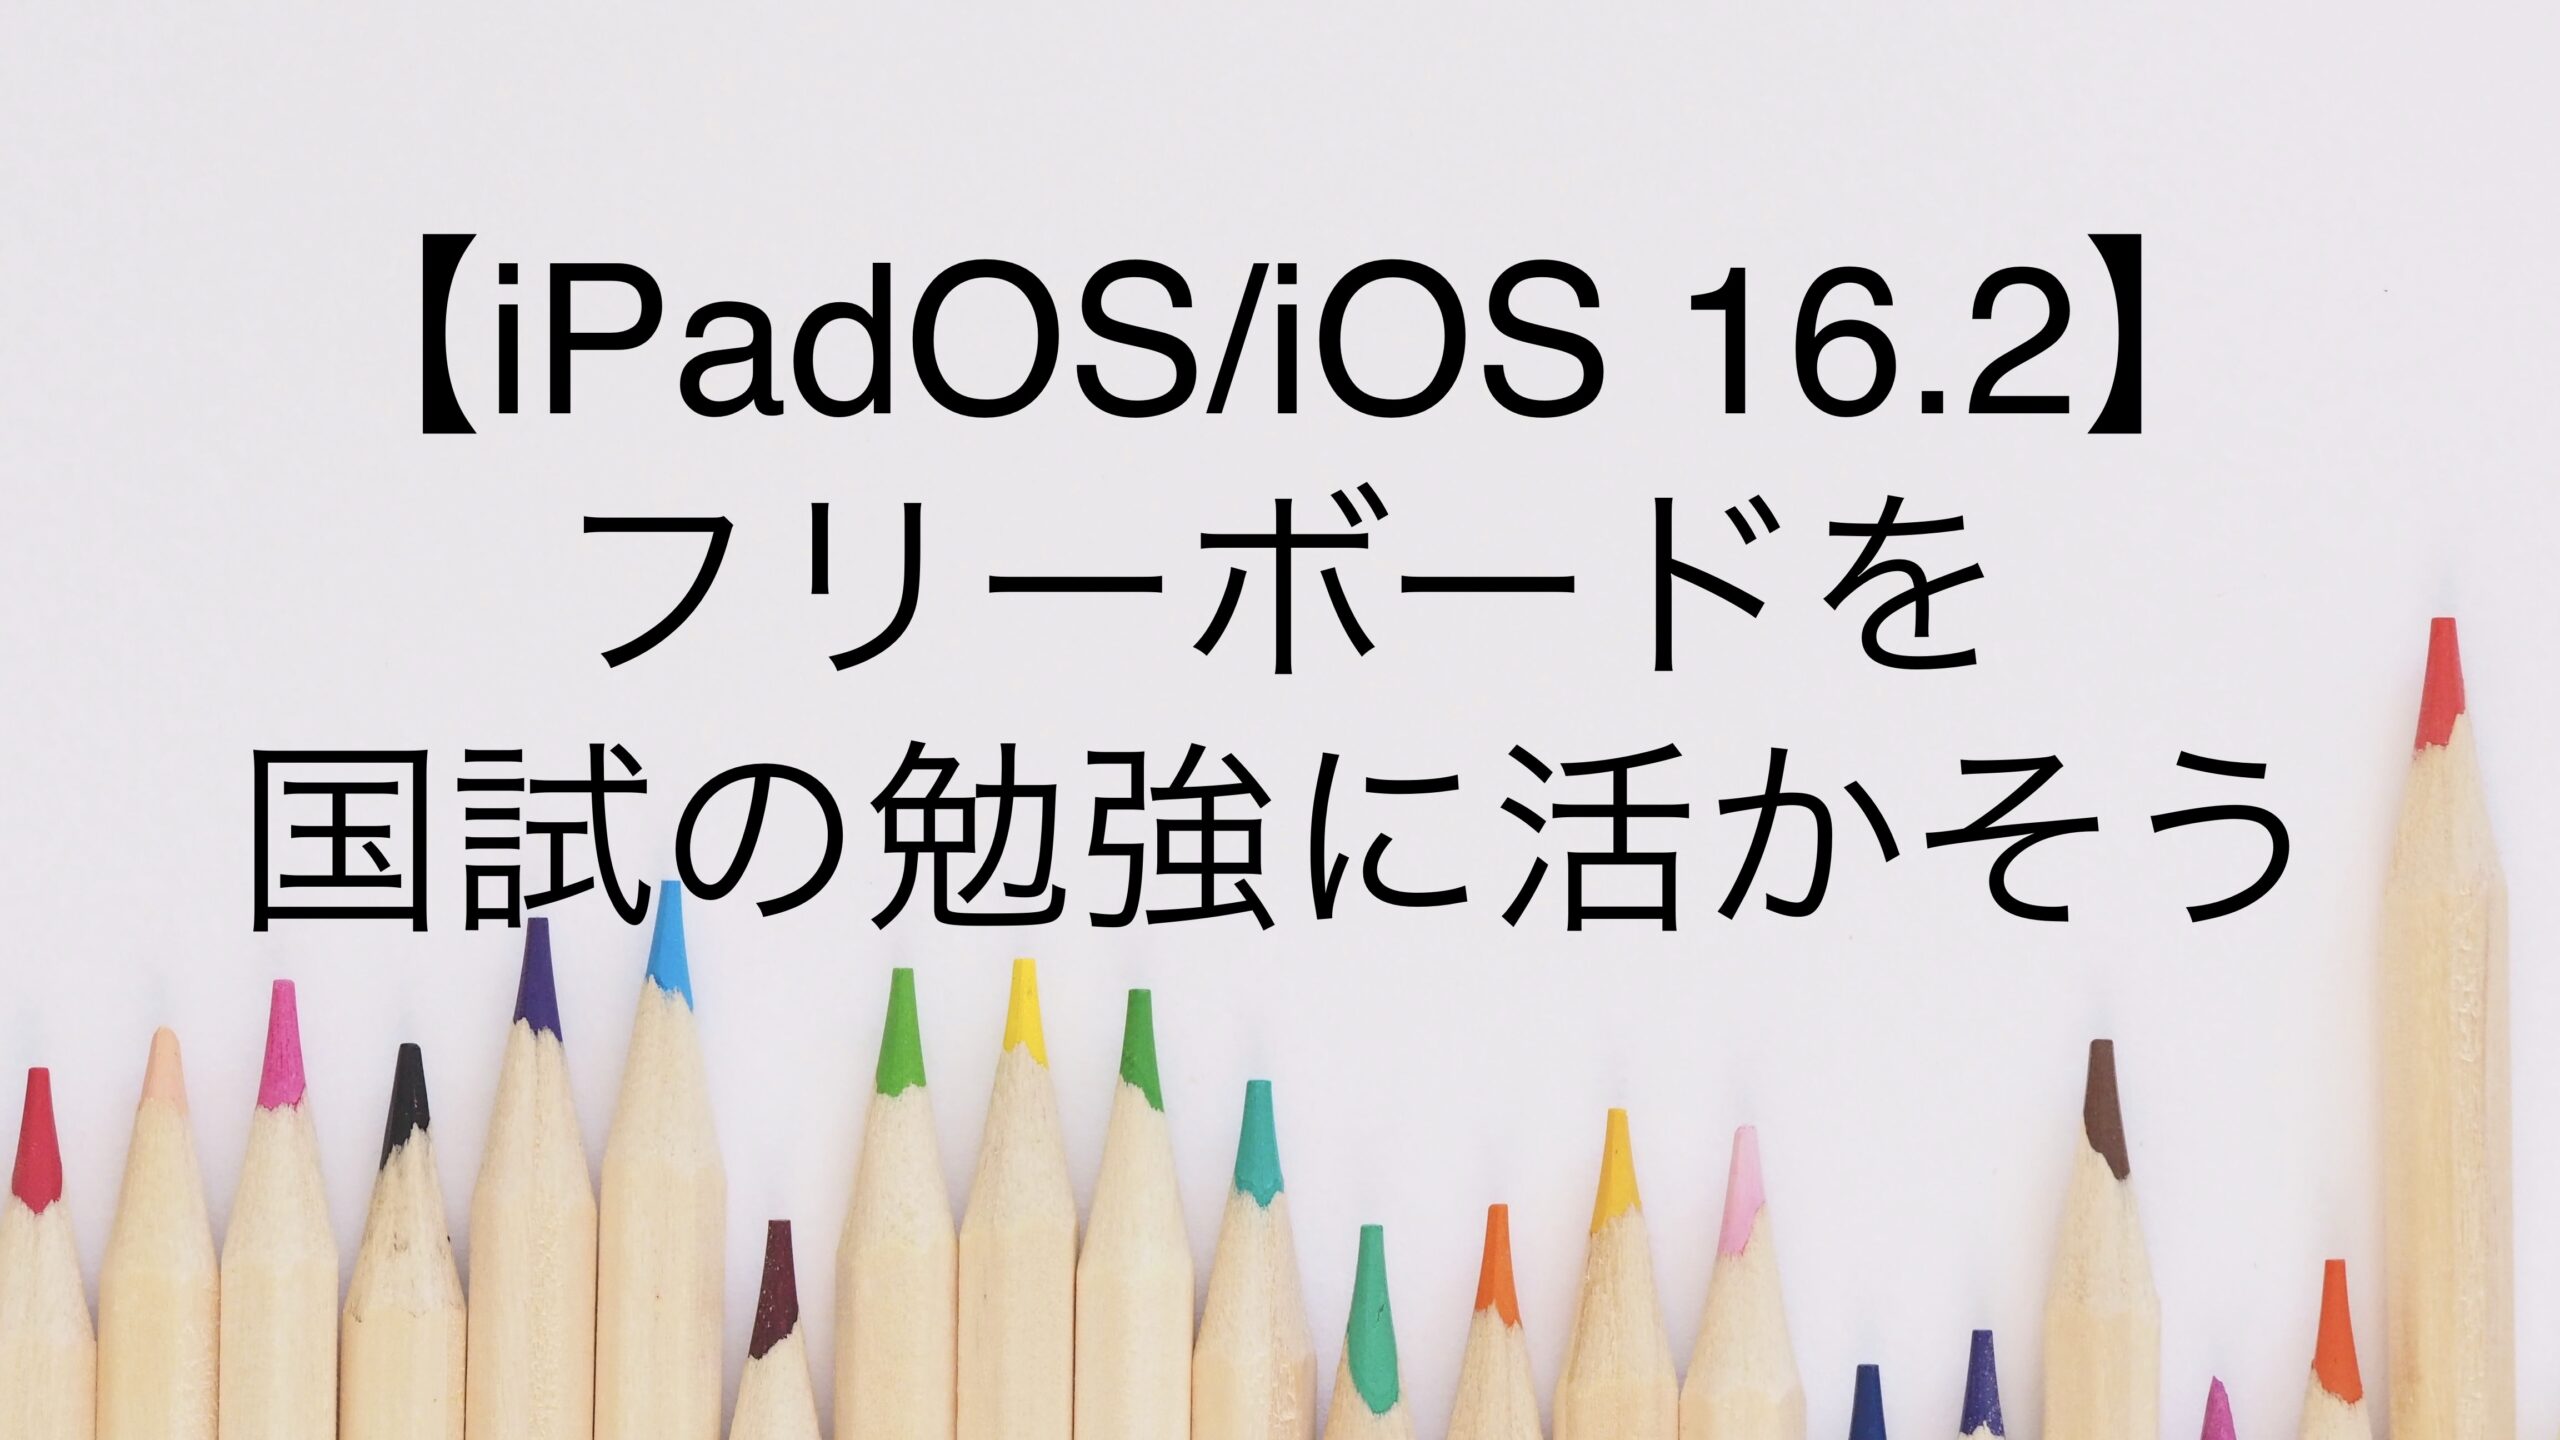 【iPadOS/iOS 16.2】フリーボードを国試の勉強に活かそう